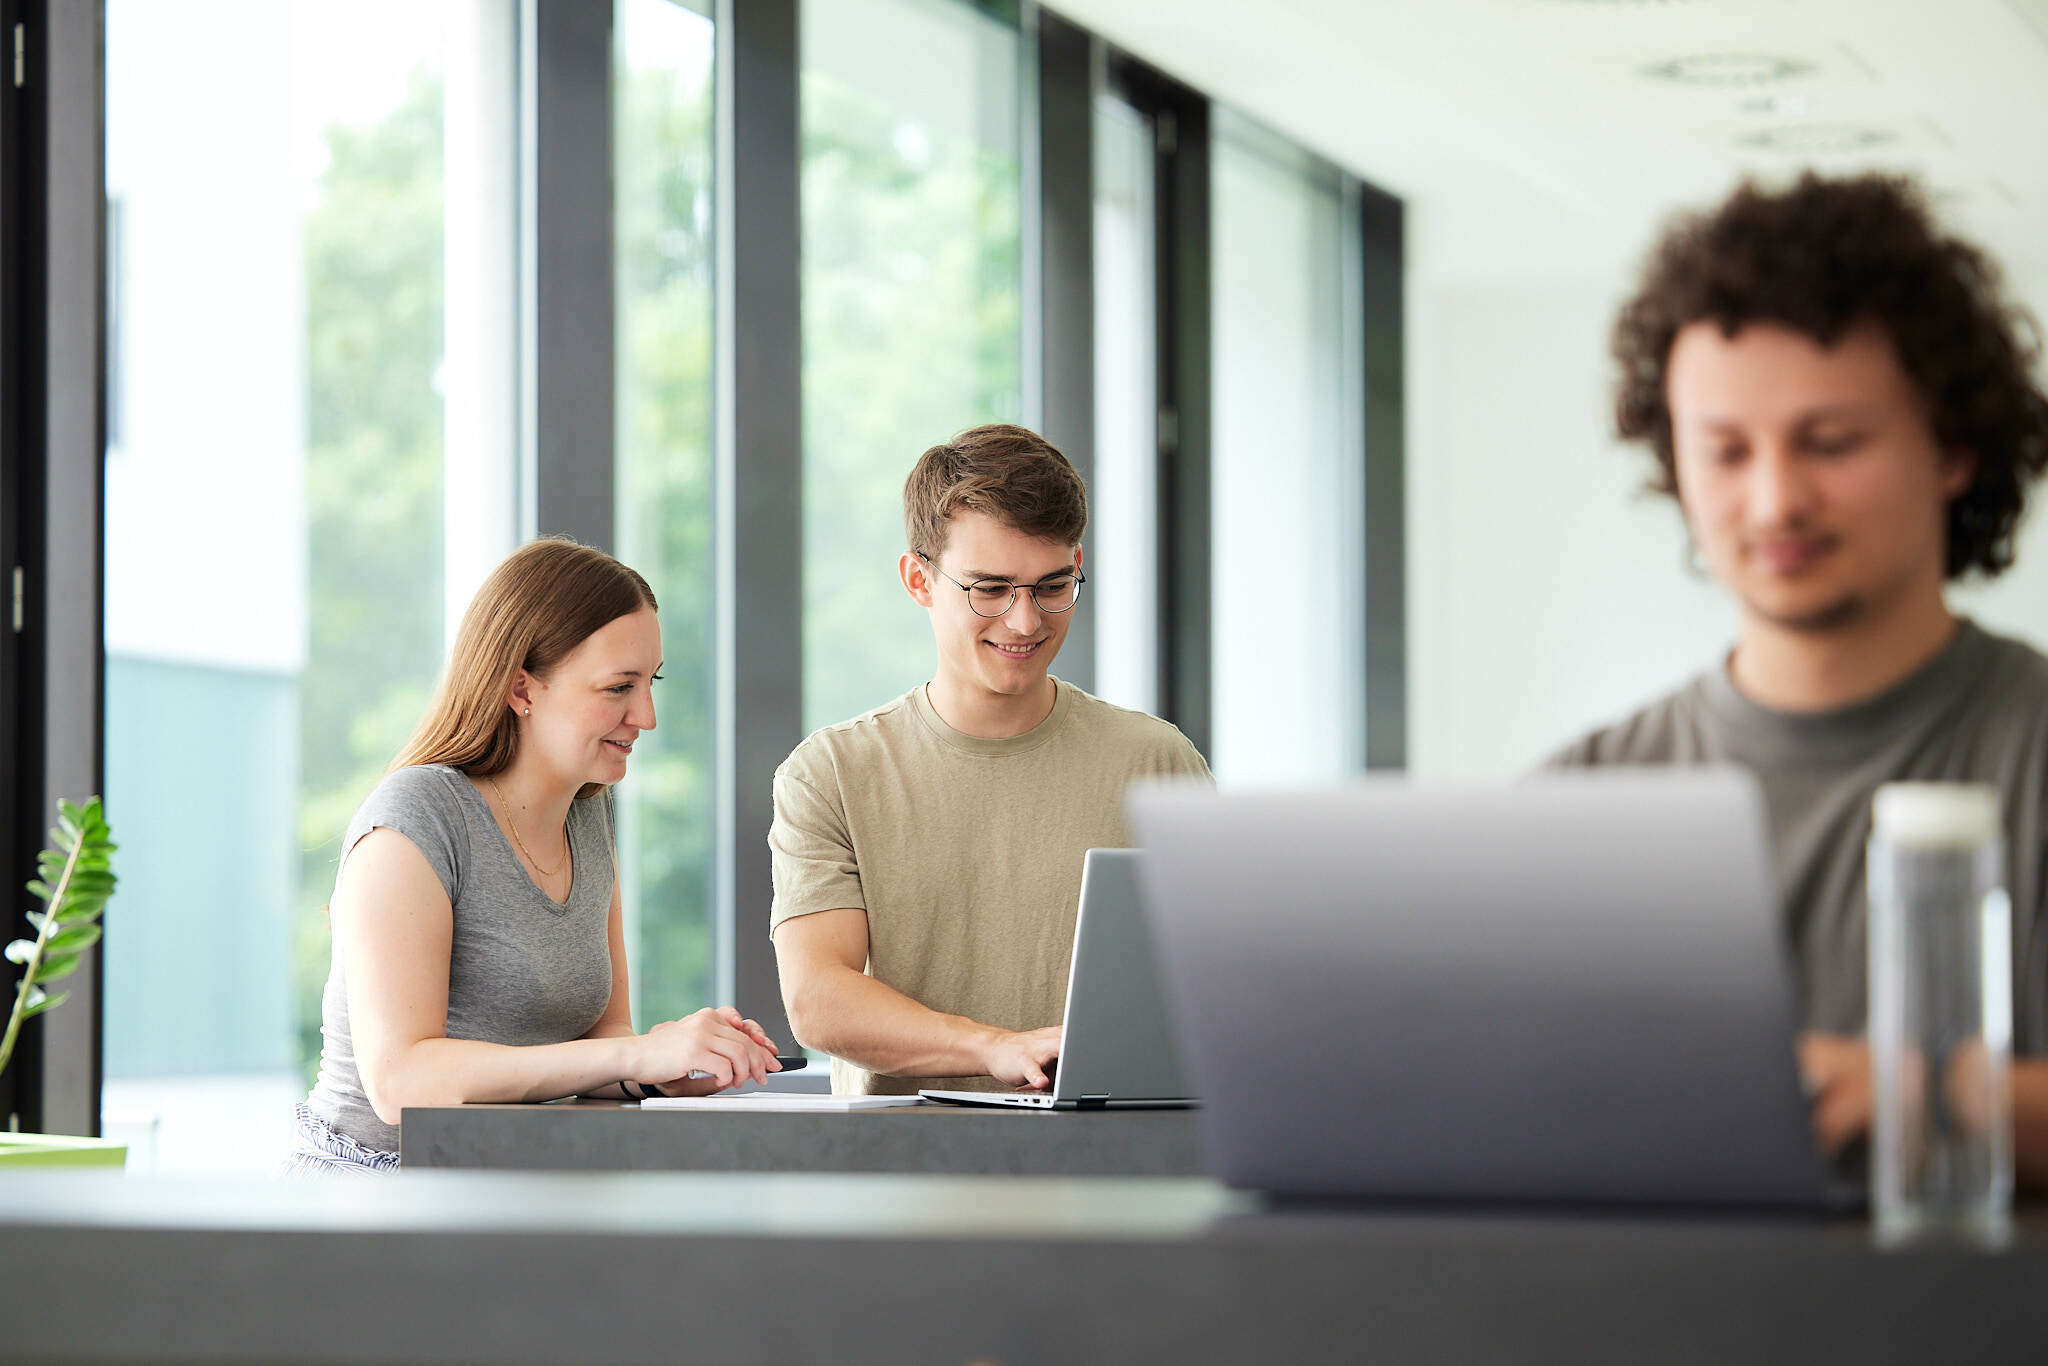 Im Fokus sind im Hintergrund zwei Studenten zu sehen die auf ihrem Laptop arbeiten, während rechts im Vordergrund unscharf ein Student ebenfalls mit seinem Laptop arbeitet